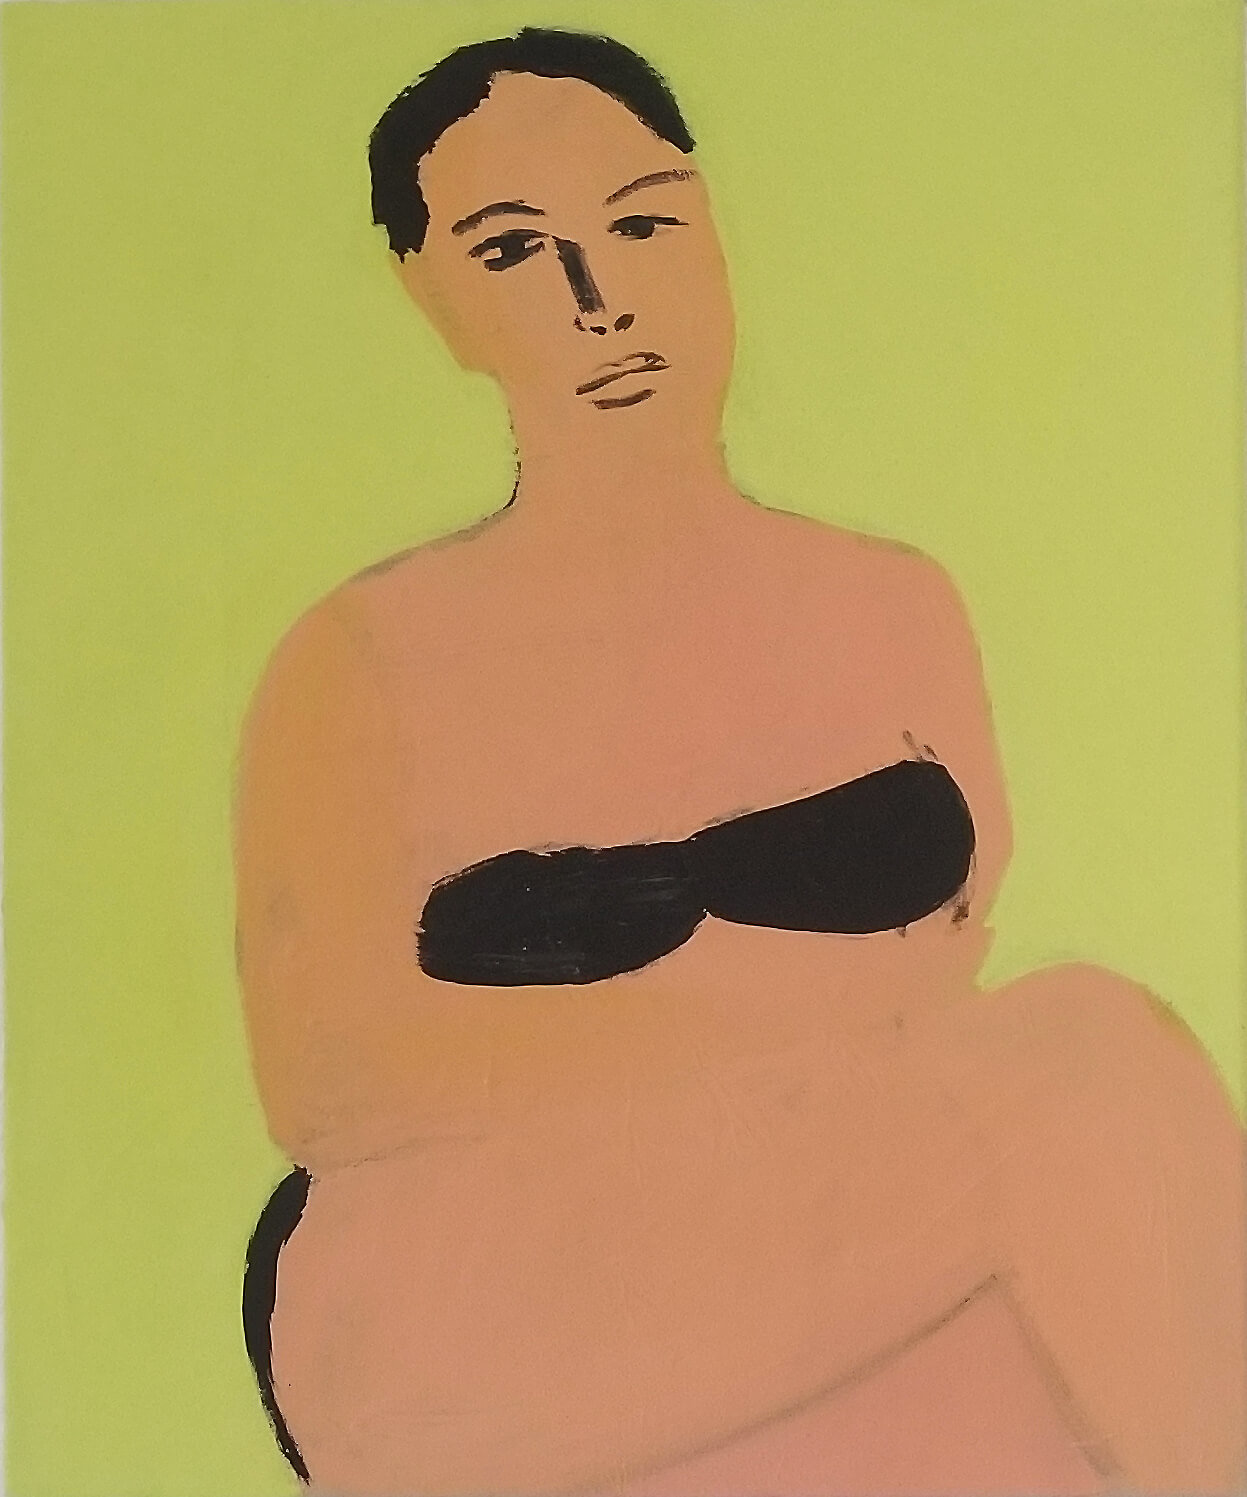 Grégory Olympio, Femme, fond vert, 2020, acrylique sur toile, 55 x 46 cm. Courtesy de l'artiste et de Septieme Gallery